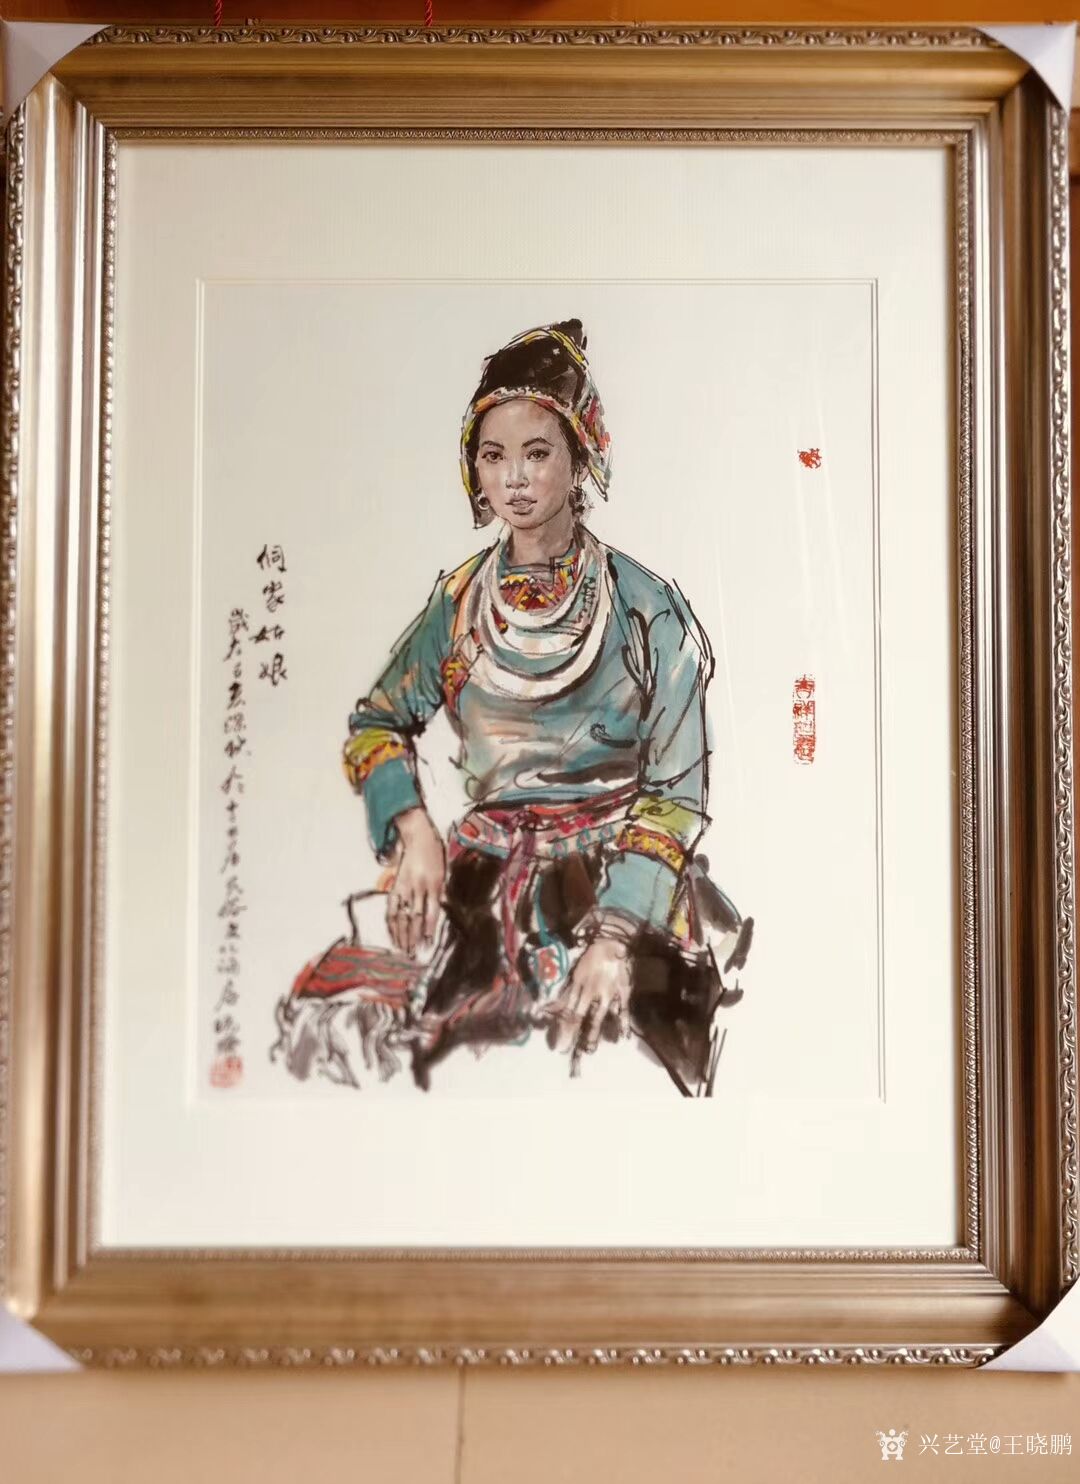 水墨画人物写生系列国画作品《侗家姑娘》中国人是最美的!